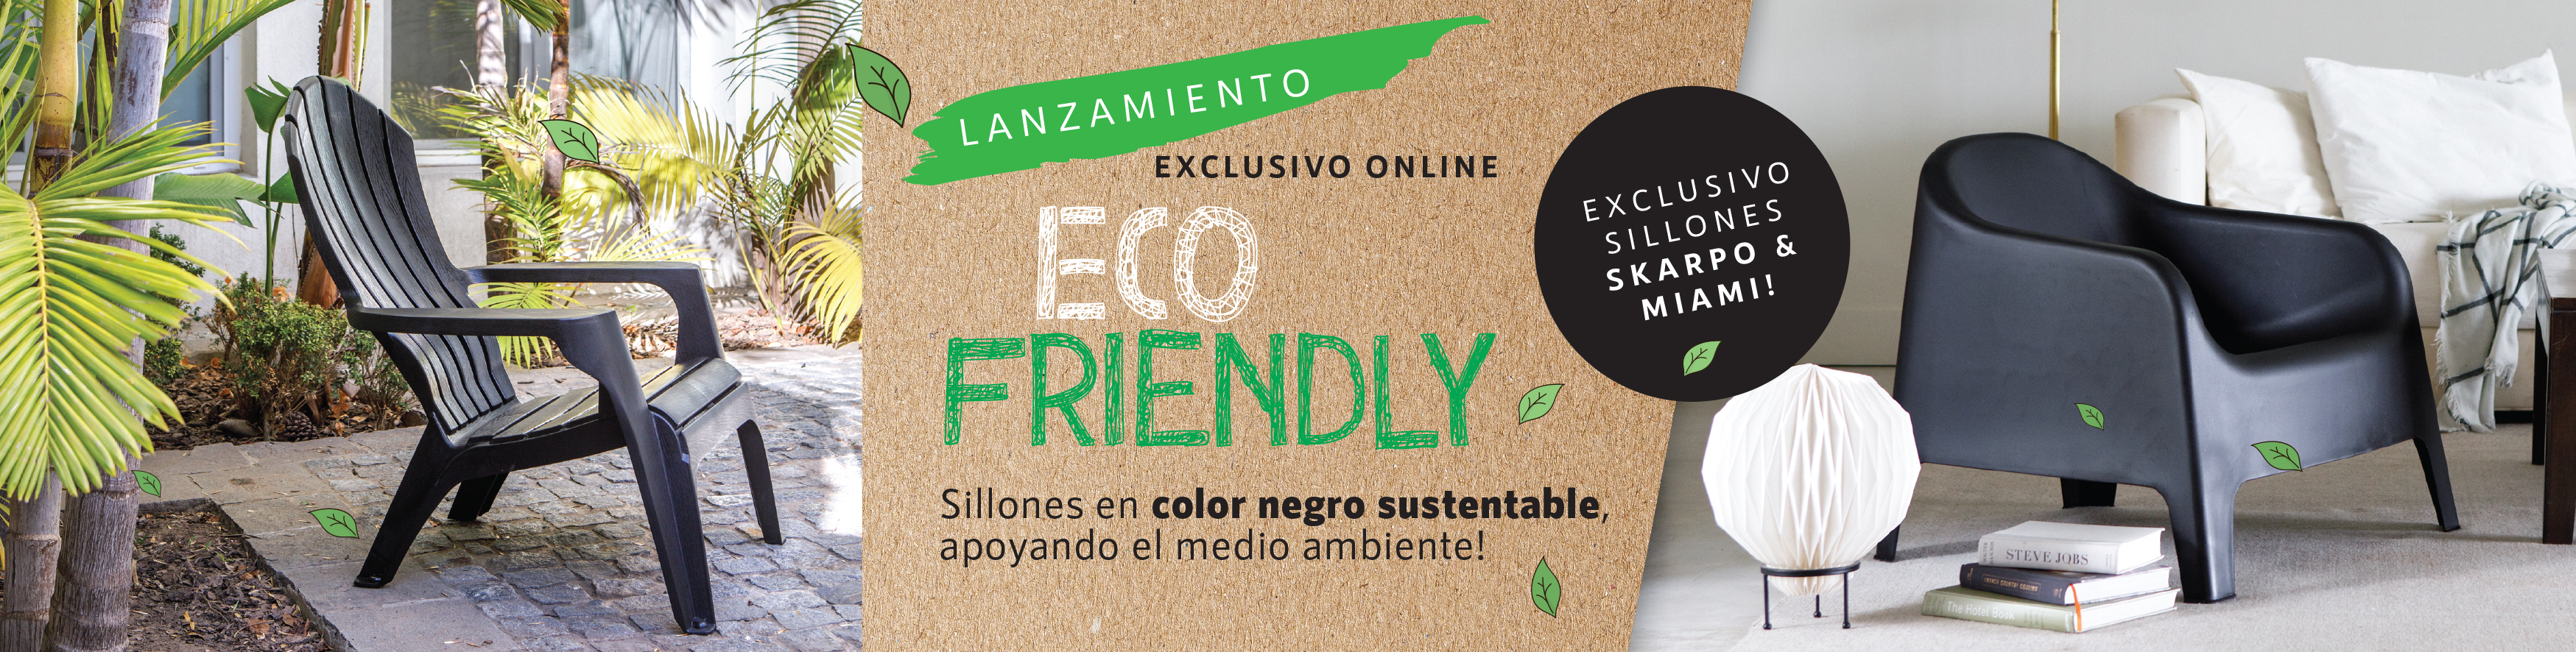 Banner Linea Ecologica | GardenLife